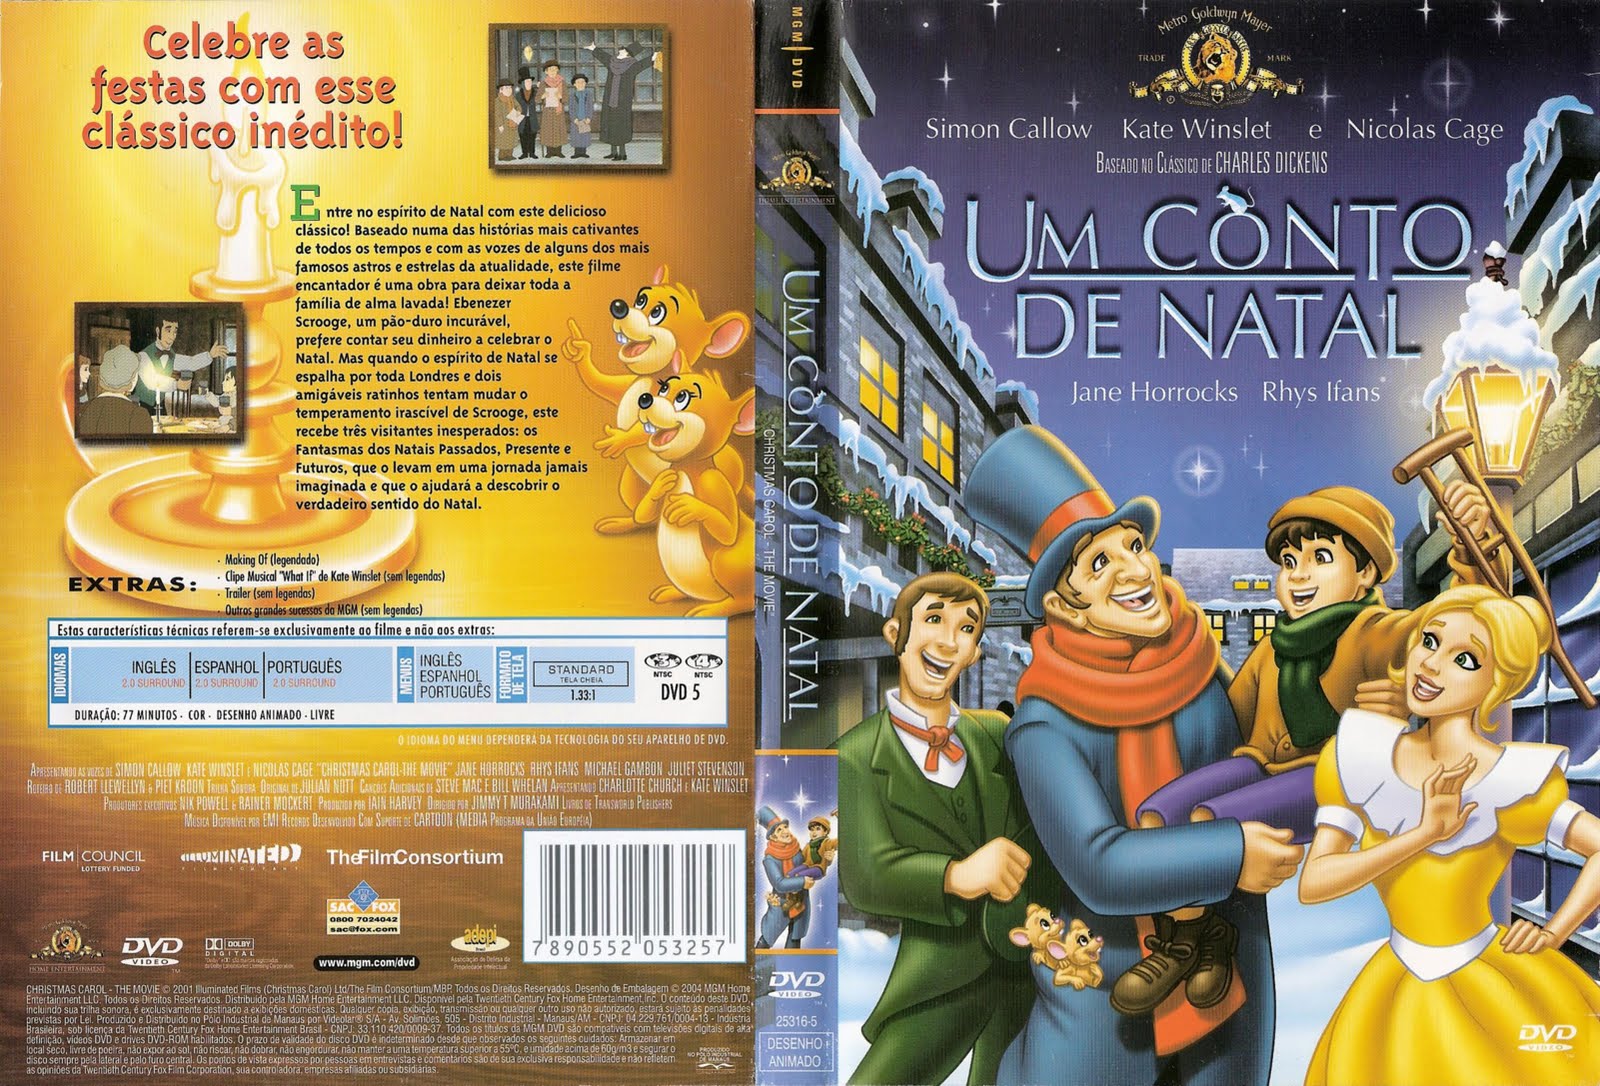 Conto De Natal [1999 TV Movie]